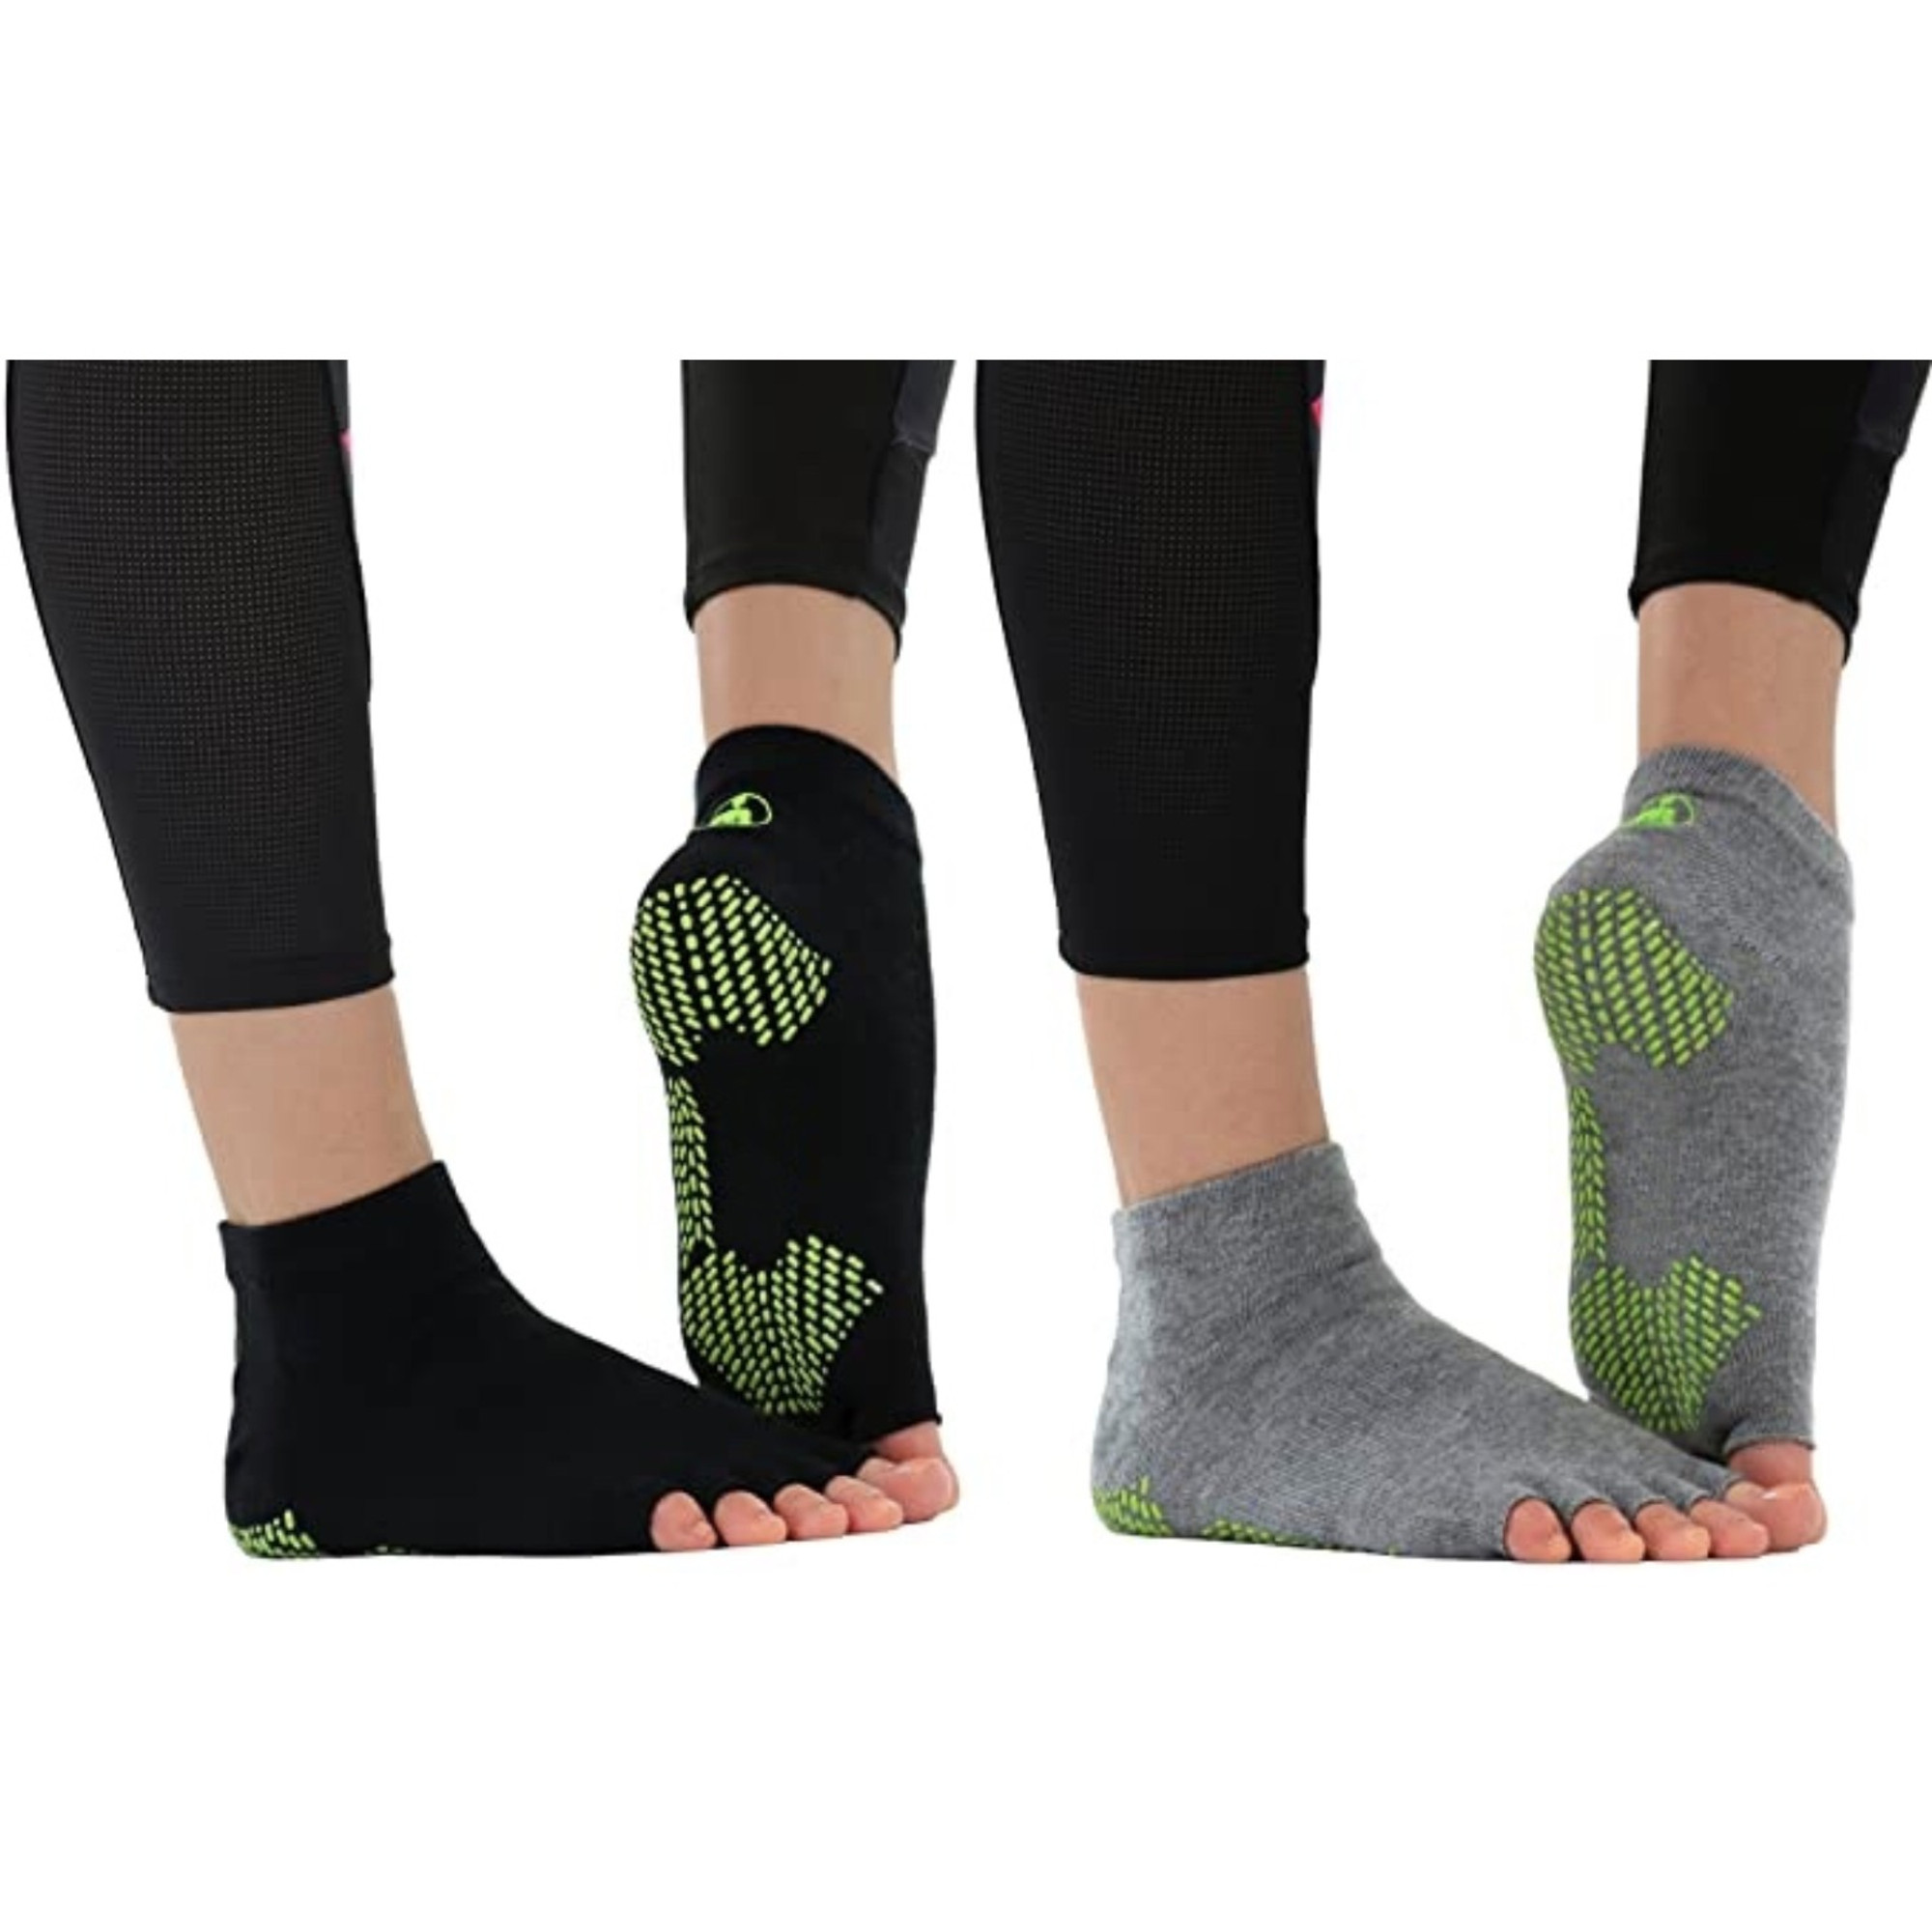 Toeless Non Slip Yoga Grip Socks Half Toe Socks for Pilates Ballet